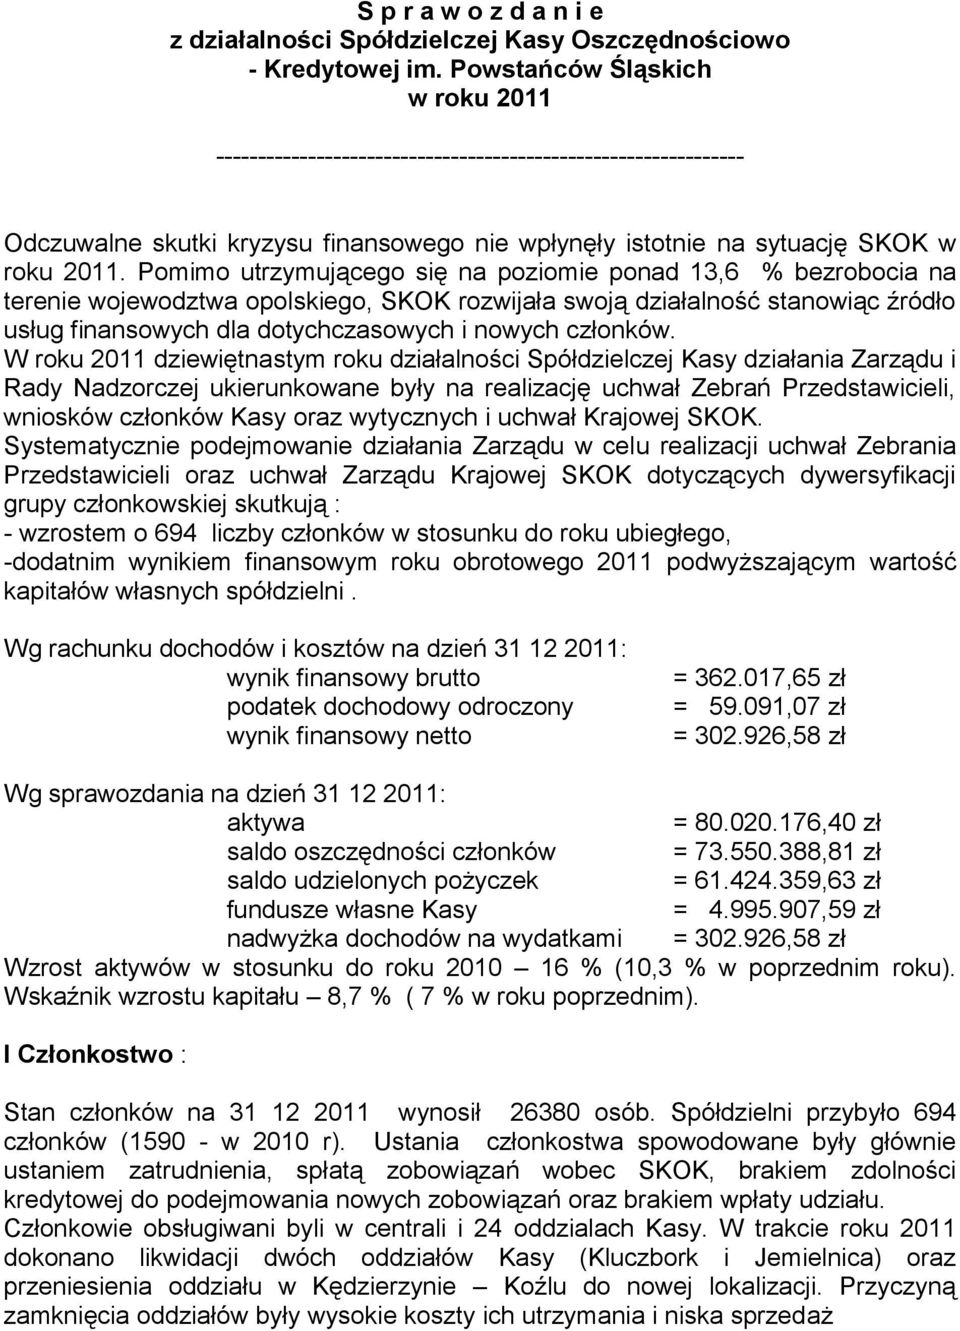 Pomimo utrzymującego się na poziomie ponad 13,6 % bezrobocia na terenie wojewodztwa opolskiego, SKOK rozwijała swoją działalność stanowiąc źródło usług finansowych dla dotychczasowych i nowych